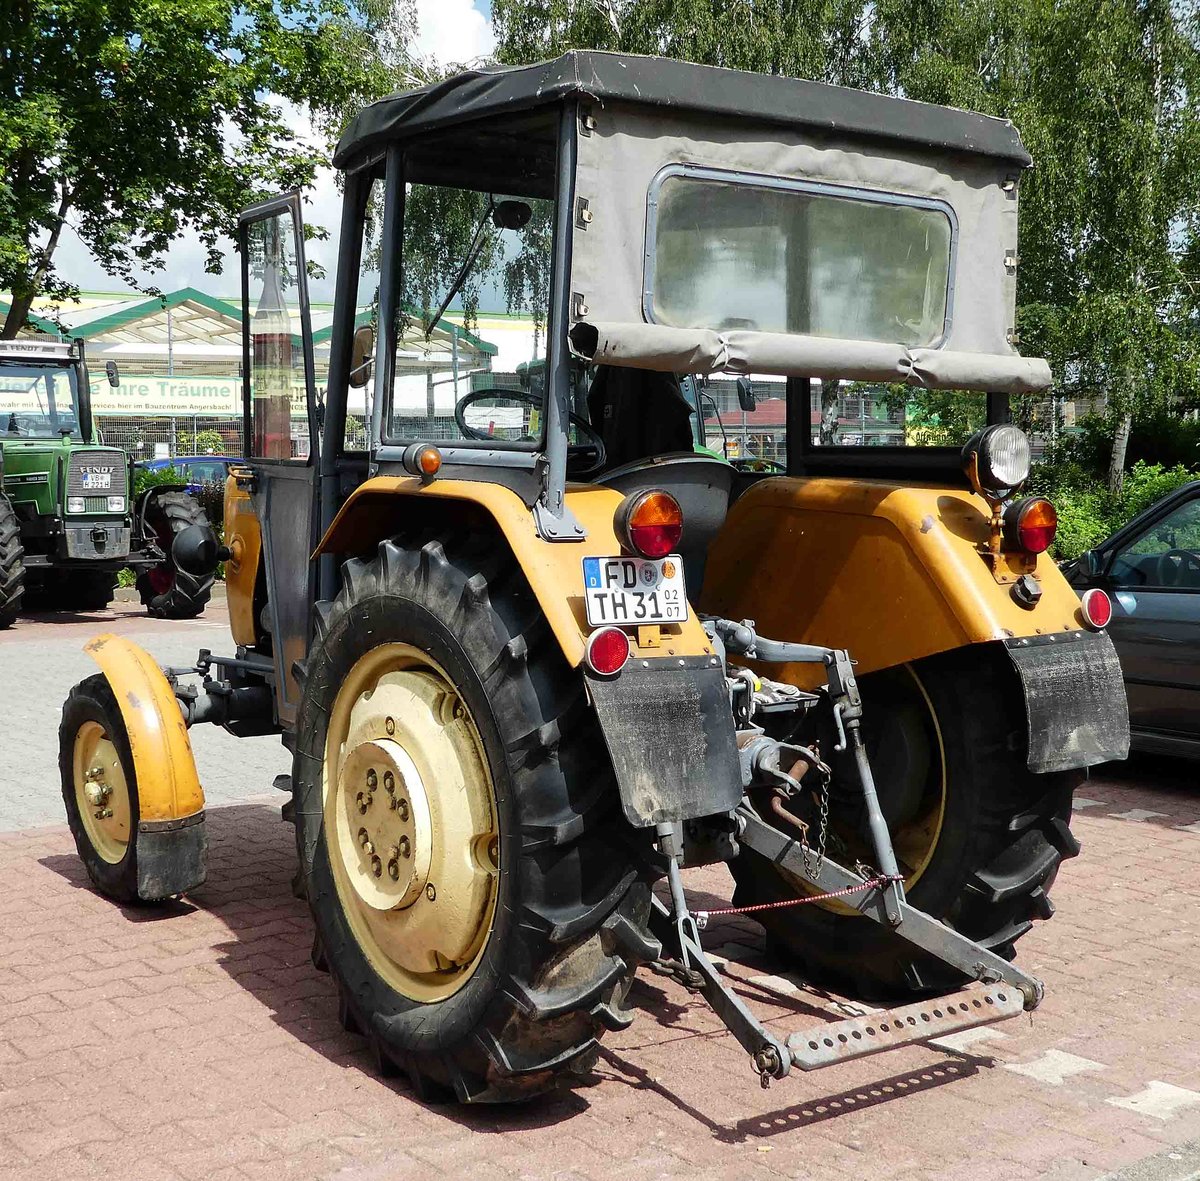 =Ursus C 330 steht bei der Traktorenausstellung  Ahle Bulldogge us Angeschbach oh Lannehuse  in Angersbach im Juni 2018